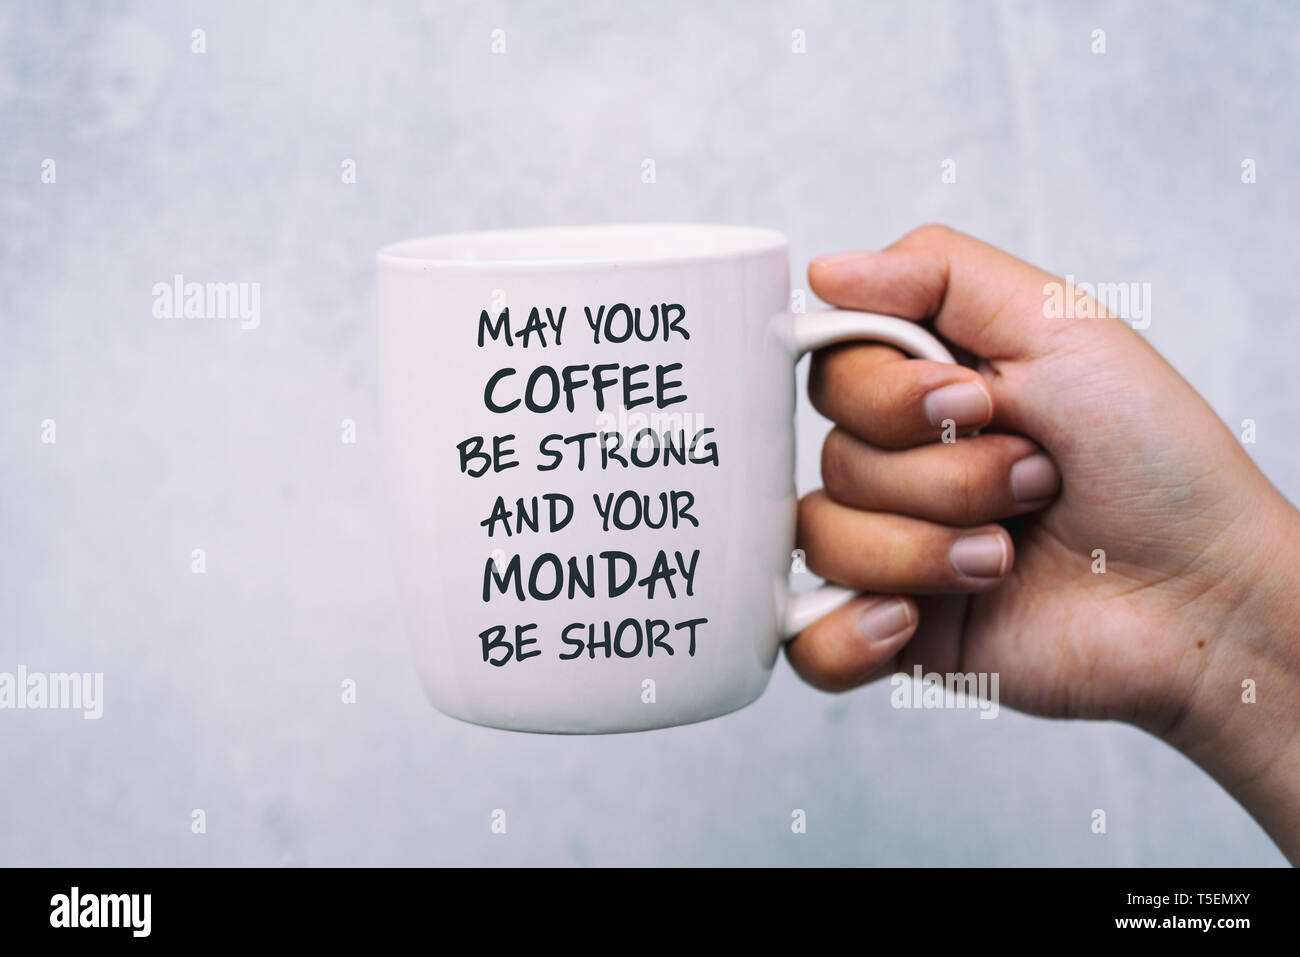 Inspirational quotes, Kaffee und Montag Gruß - können Sie Ihren Kaffee stark sein und ihre Montag kurz sein. Stockfoto